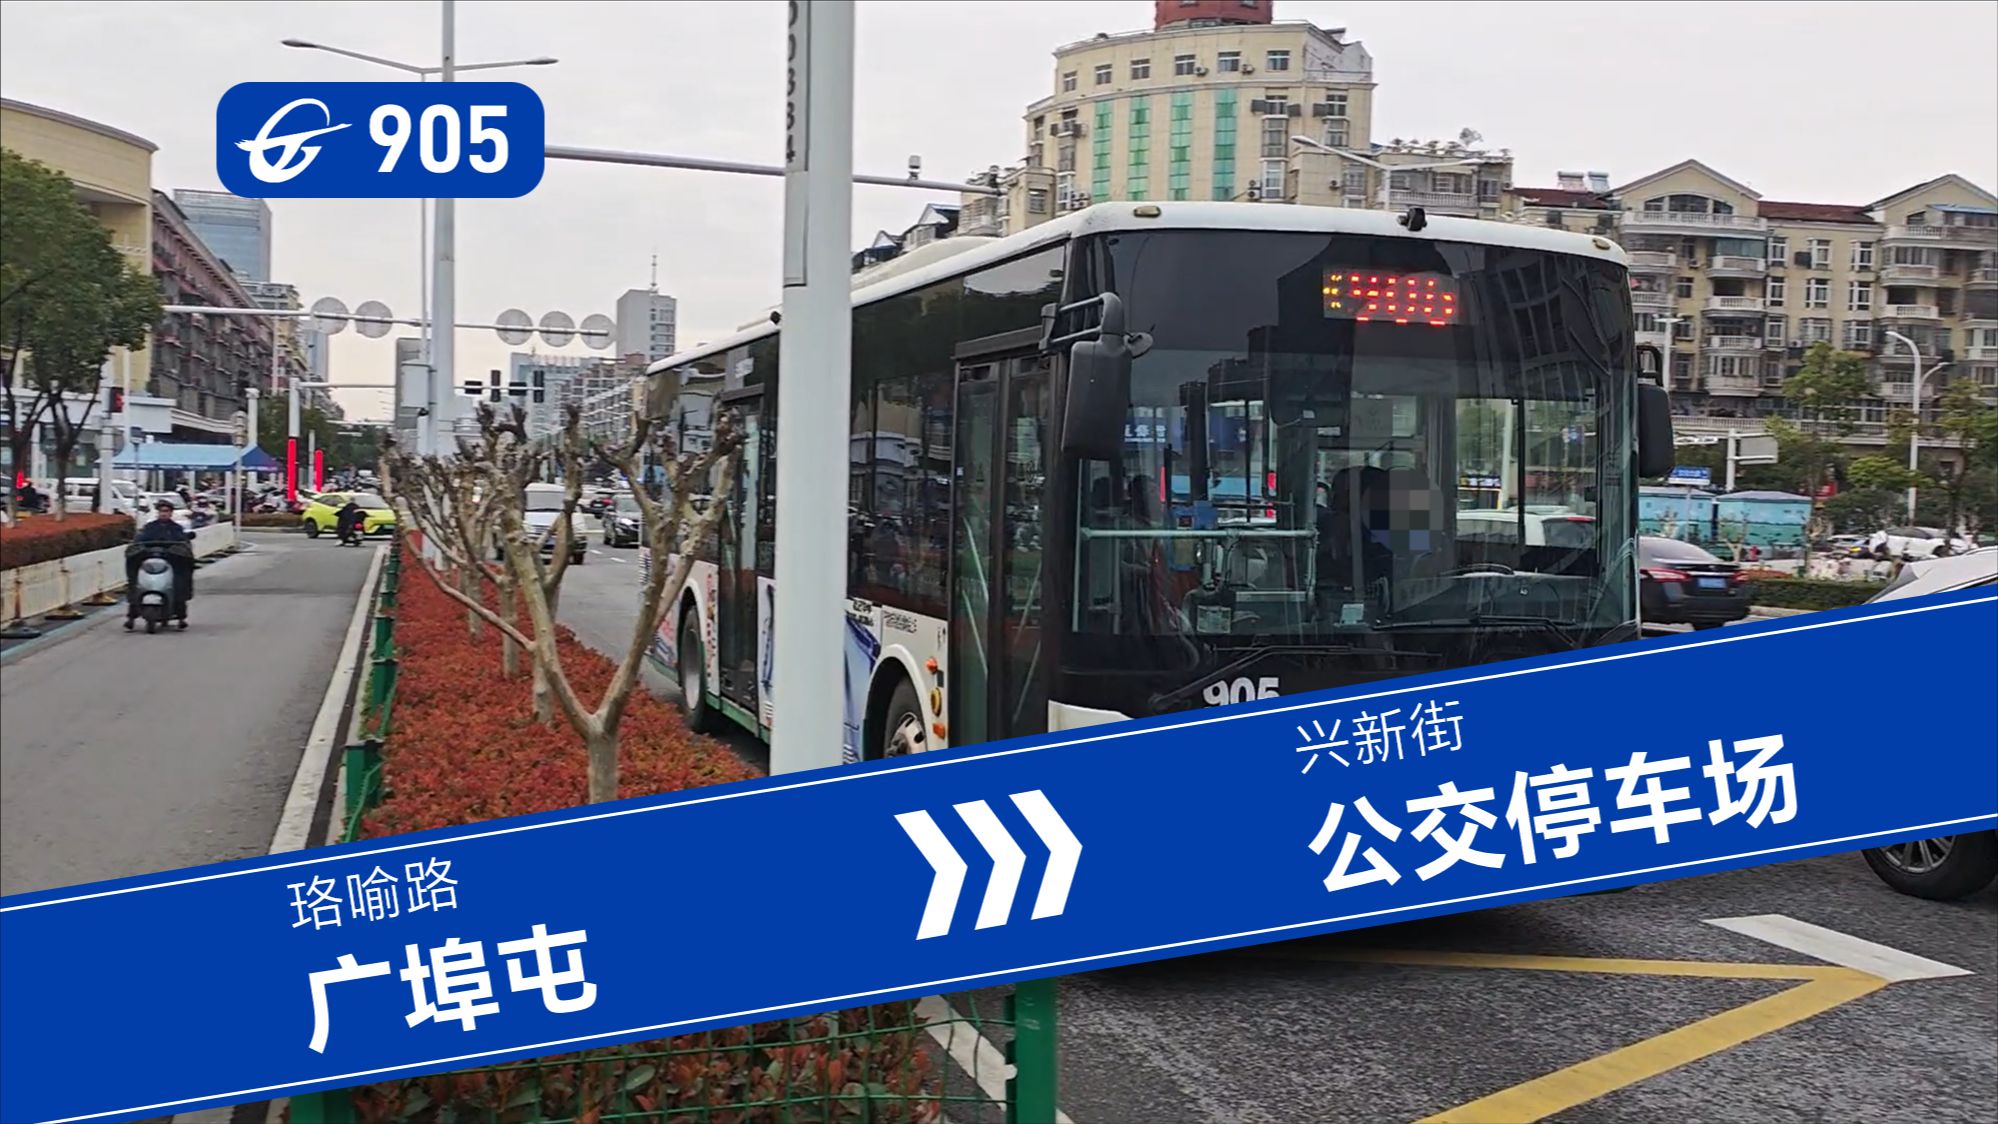 【玩转交通·公交篇】一路南下,直达江夏 武汉公交905路全程第一视角